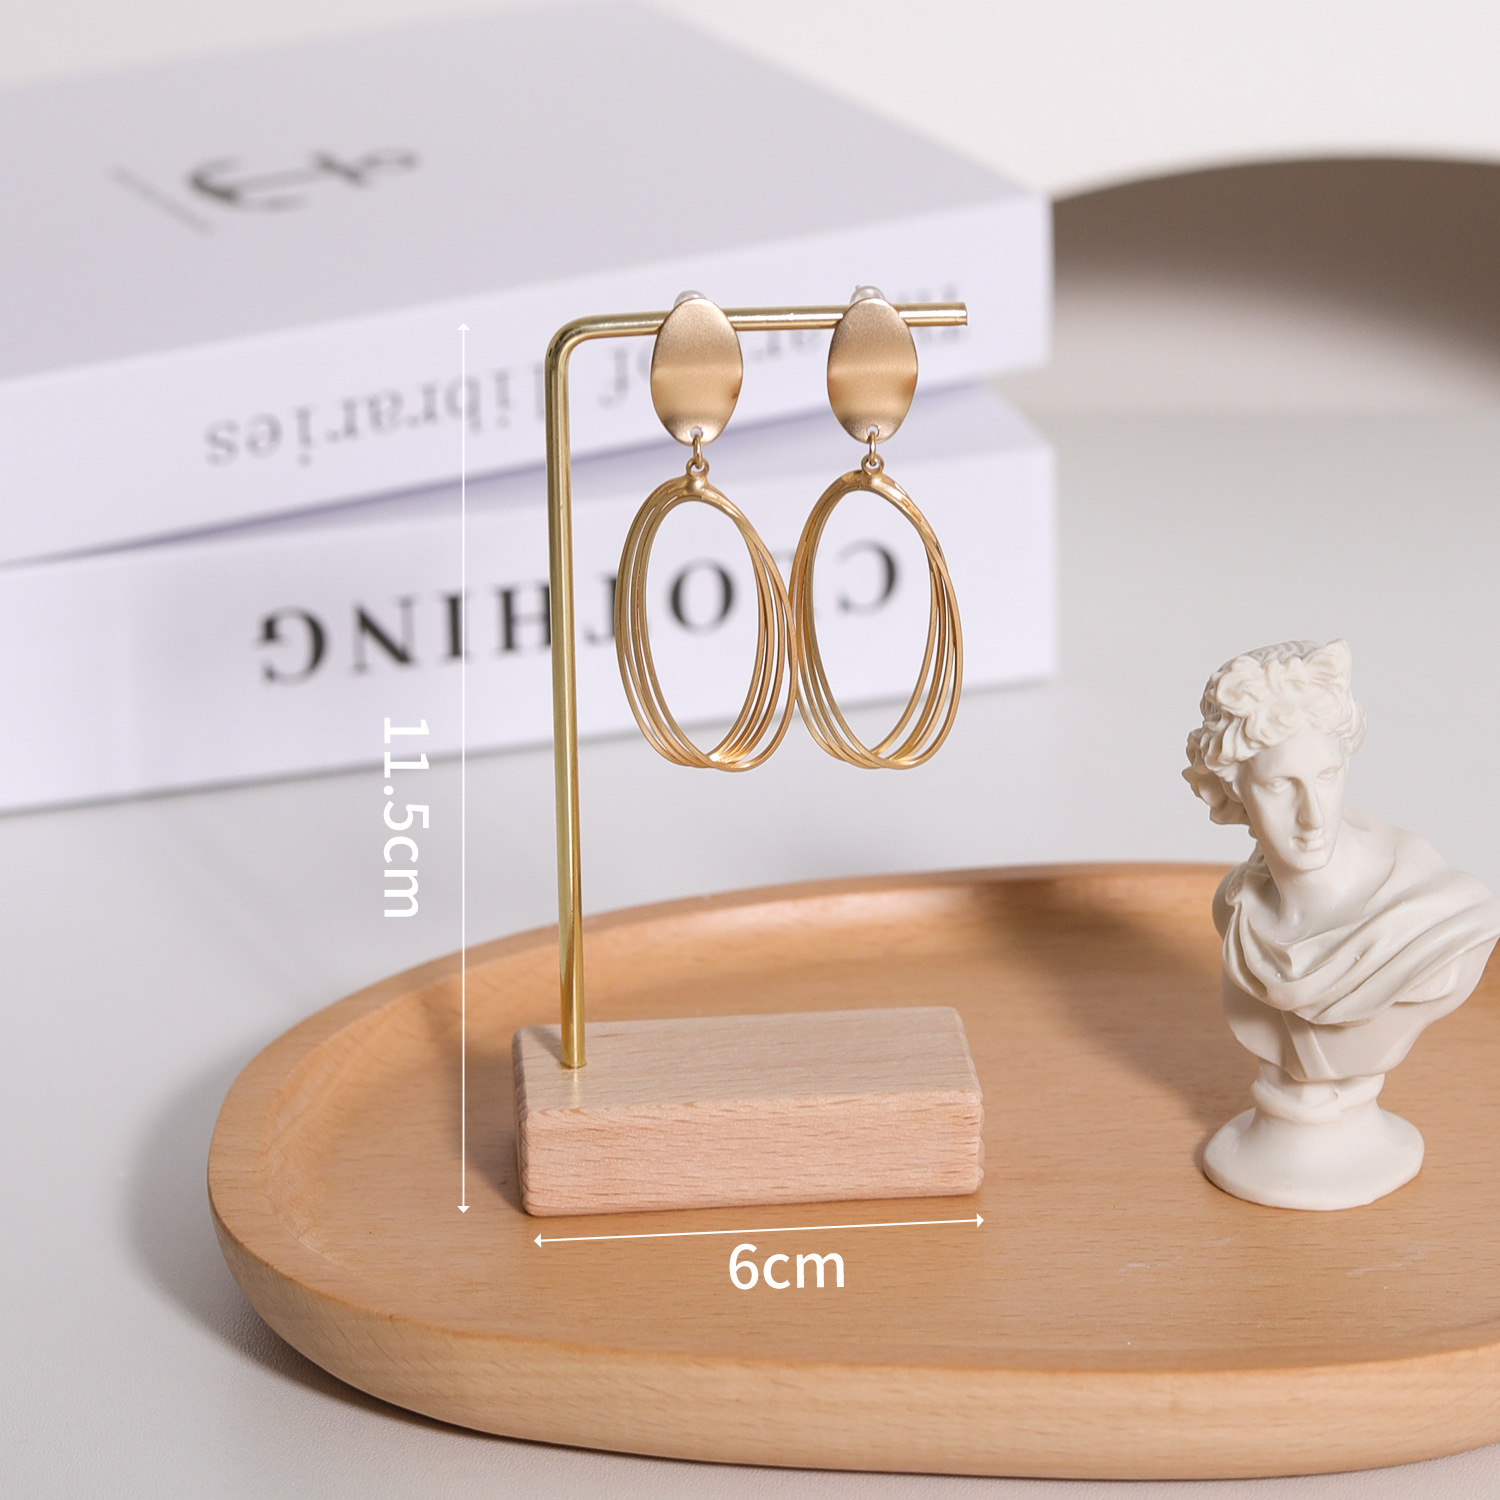 2:L-shaped jewelry rack